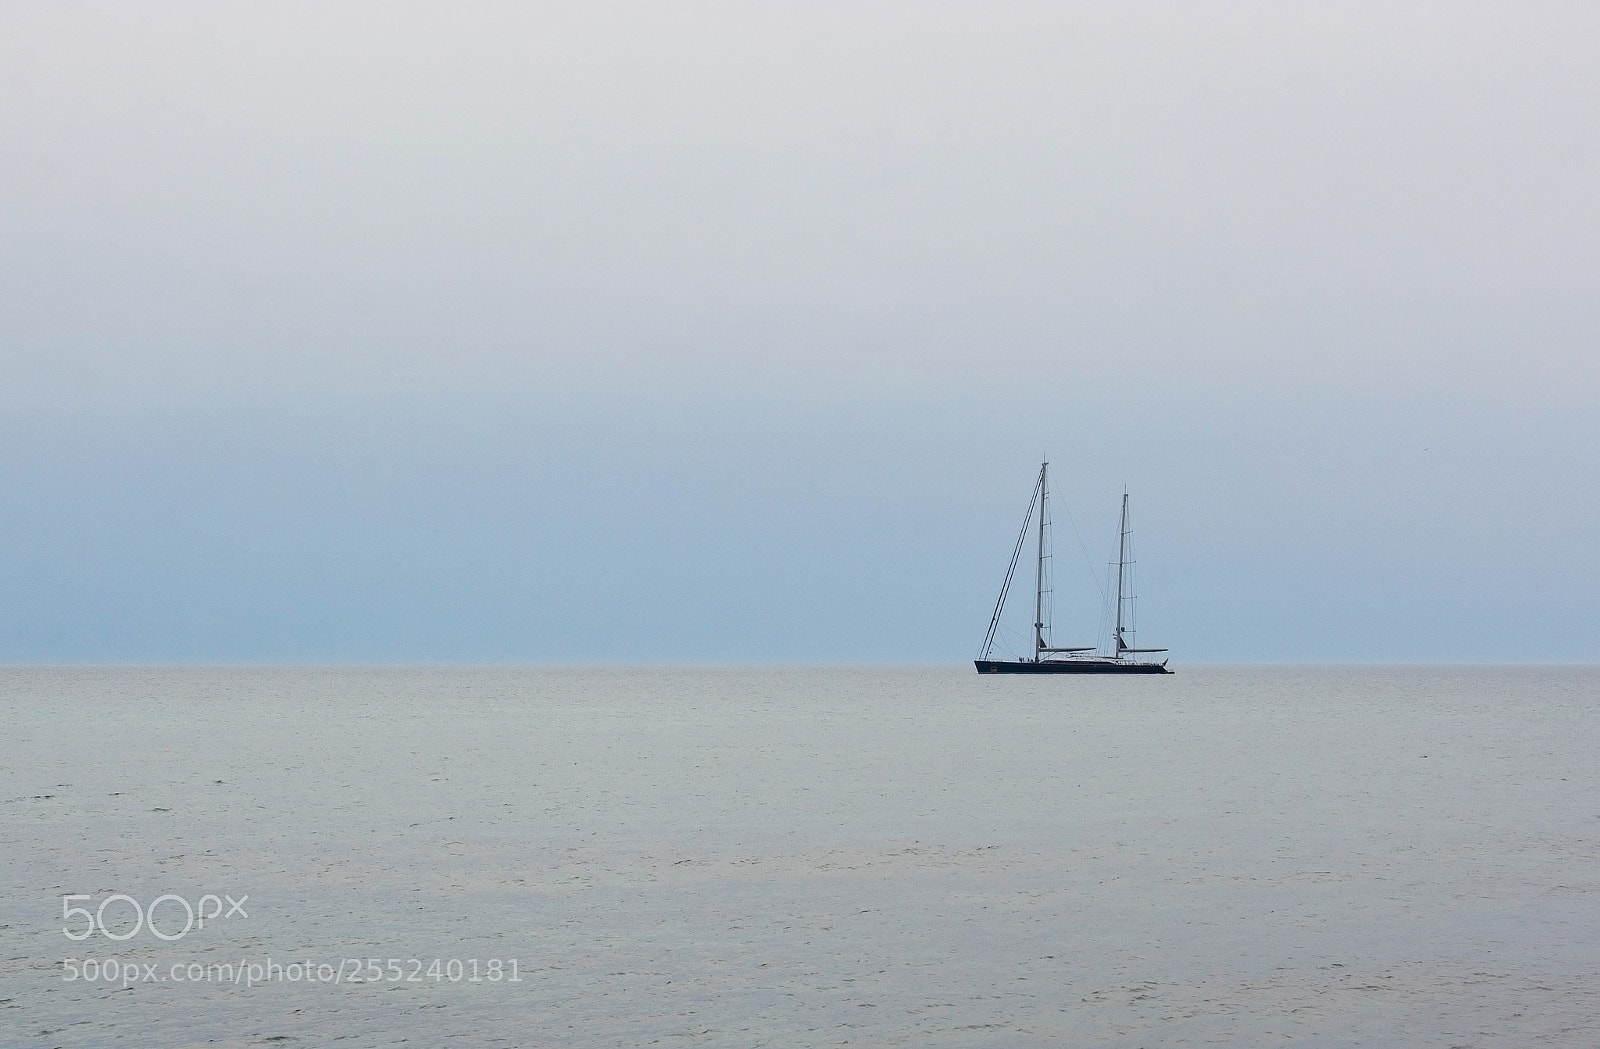 Nikon D7100 sample photo. Two-masted sailing yacht sybaris photography